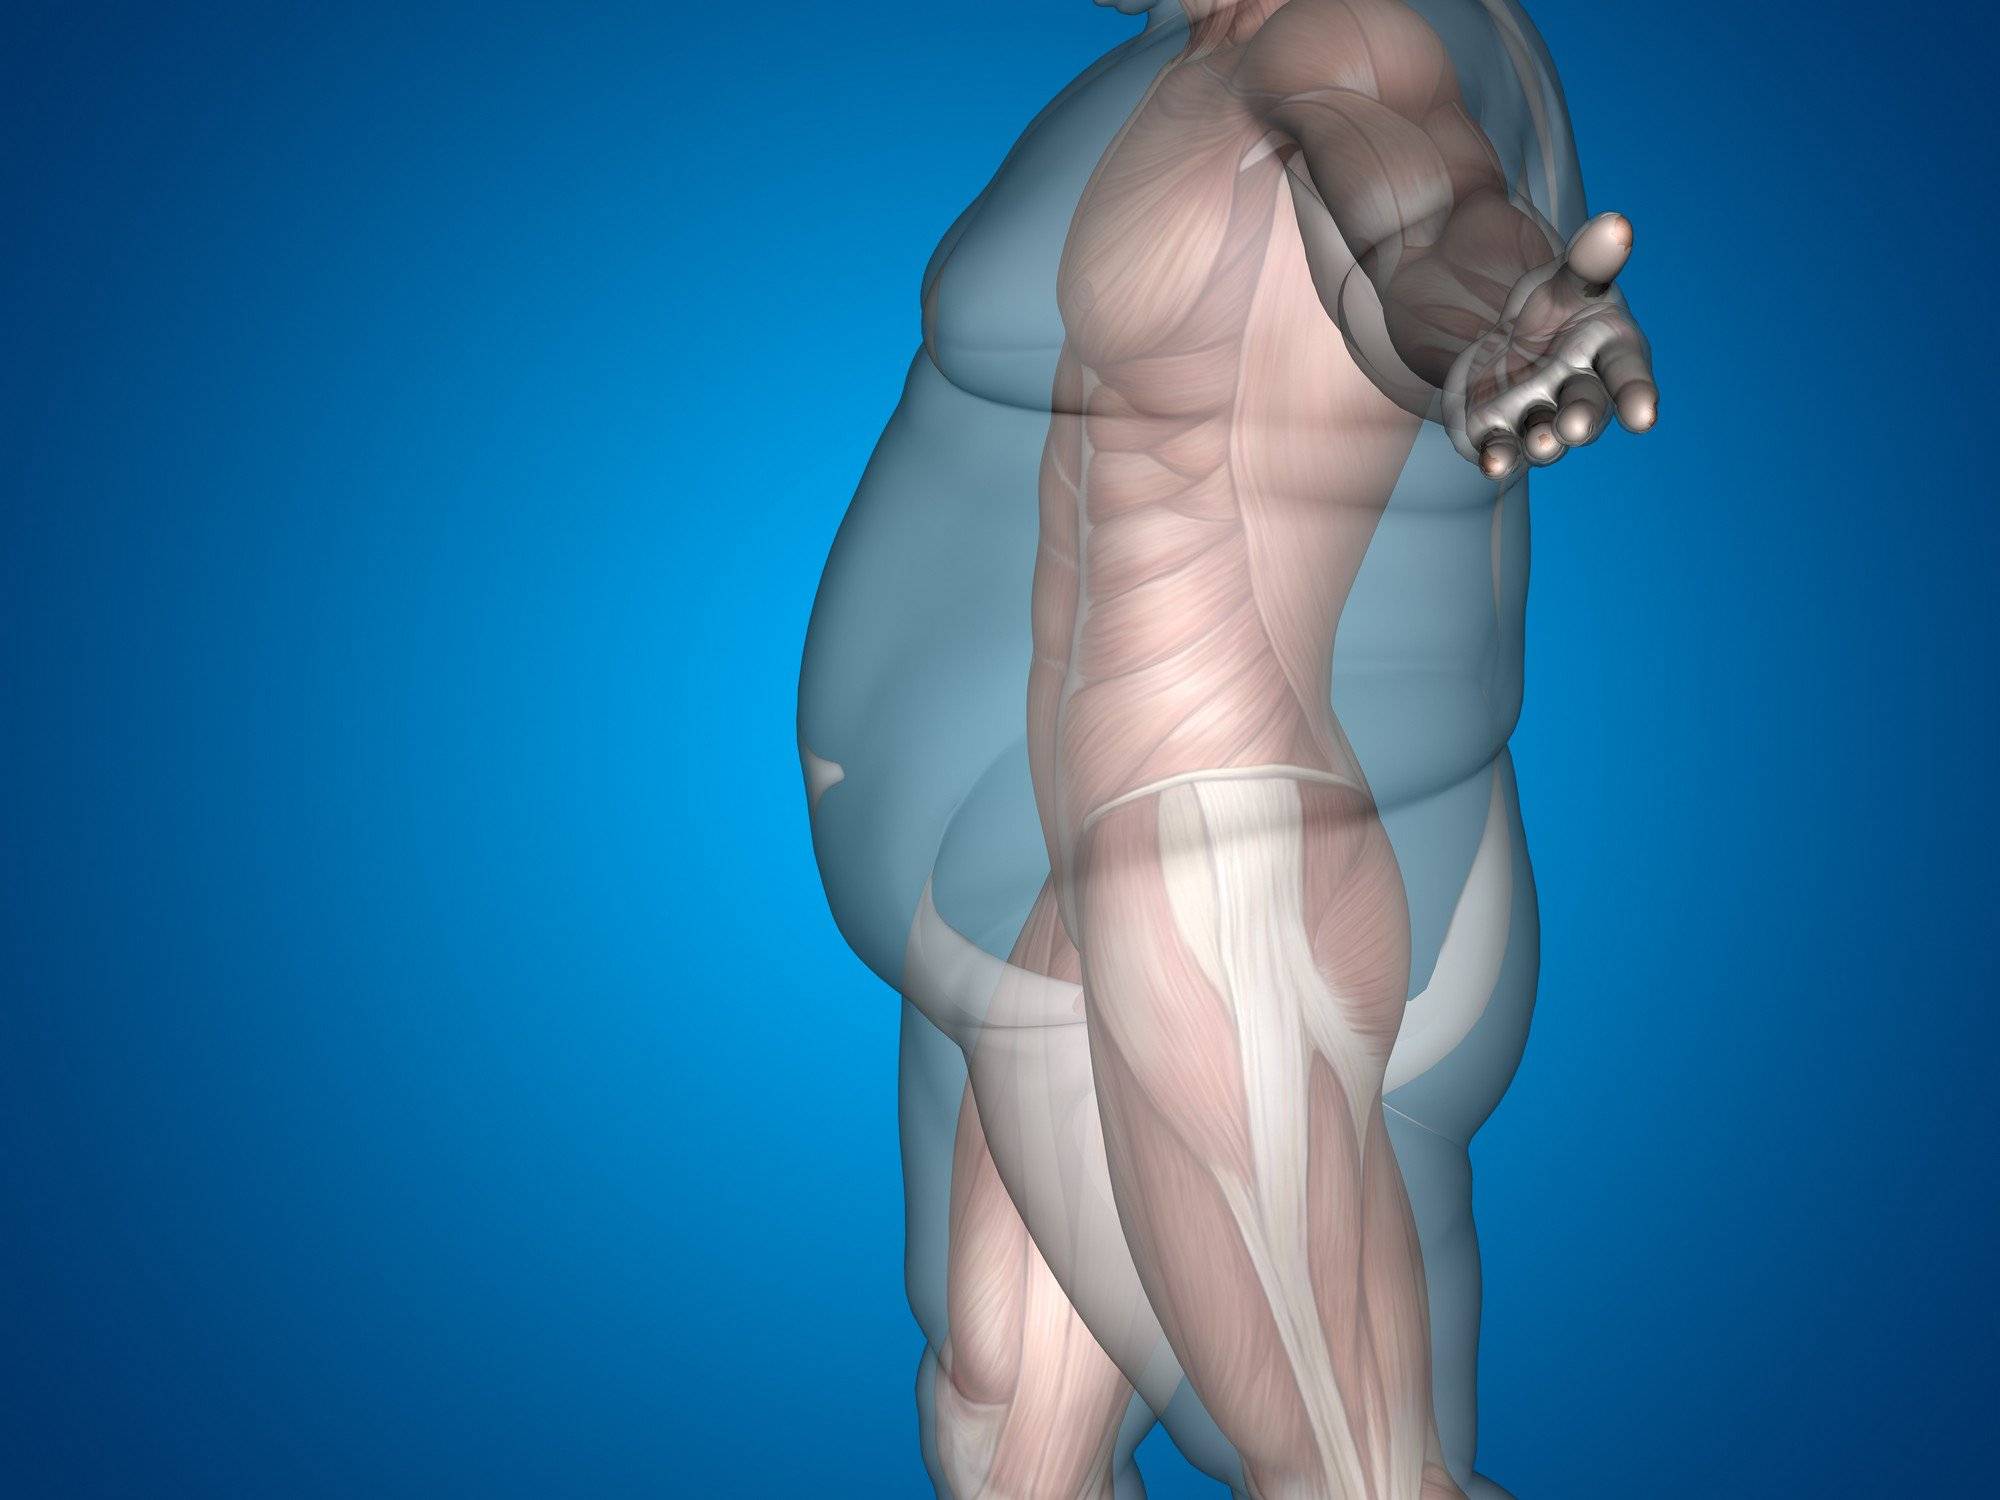 50 оттенков жира: о чем расскажут его отложения в разных частях тела и как с этим бороться :: инфониак